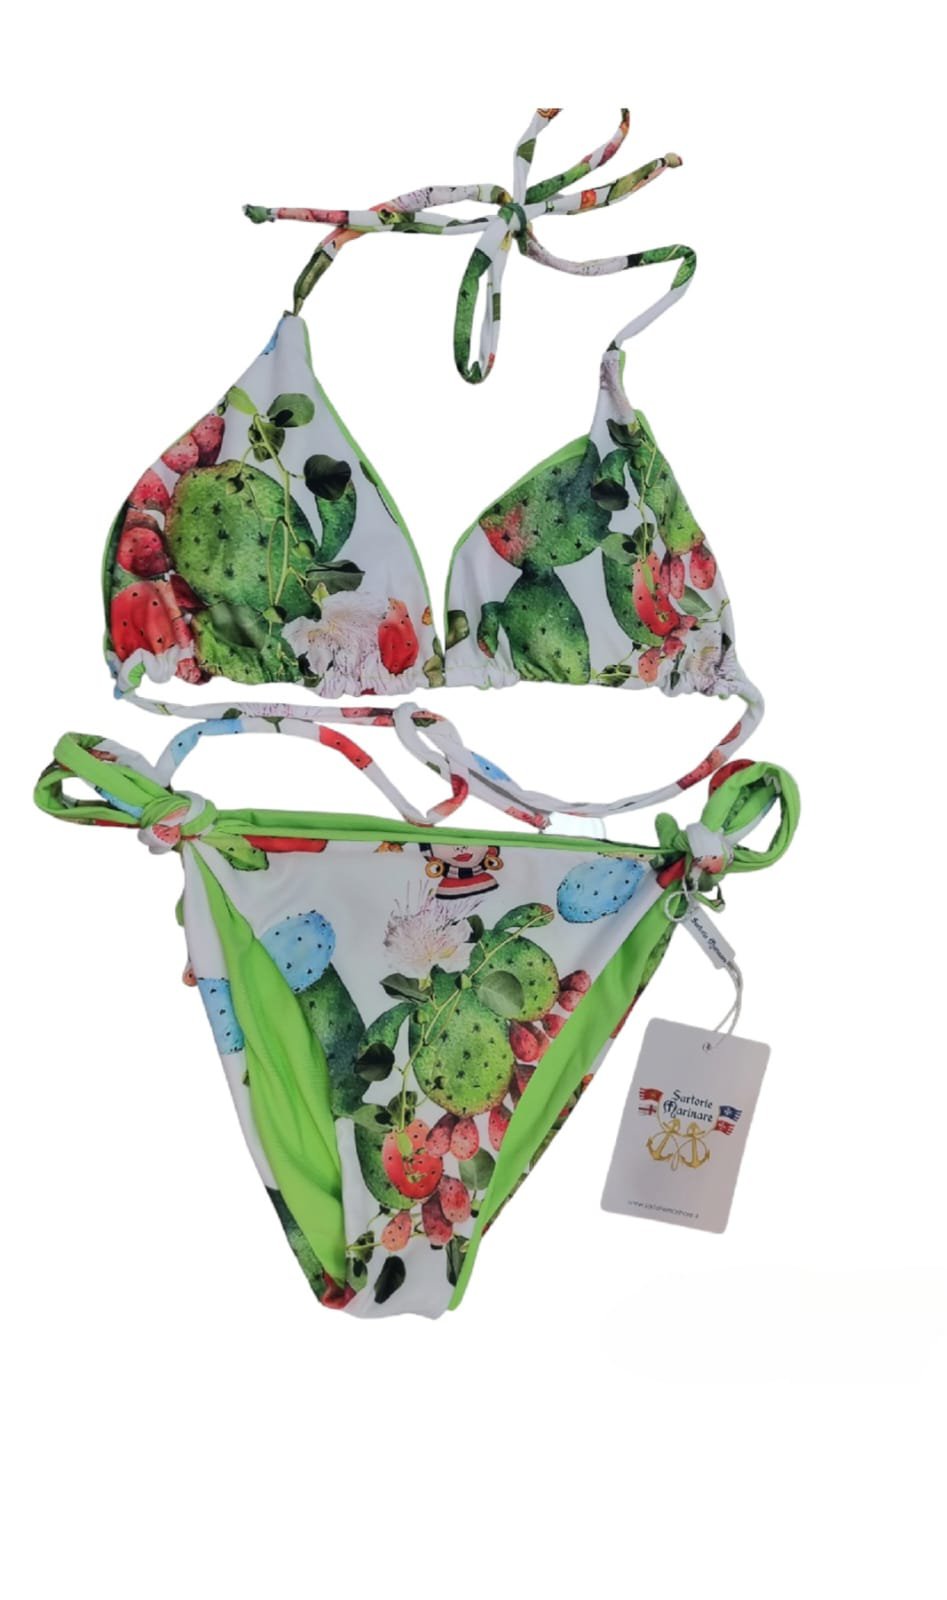 Costume bikini triangolo reversibile  in verde con slip regolabile con laccetti. Fantasia cactus e teste di moro